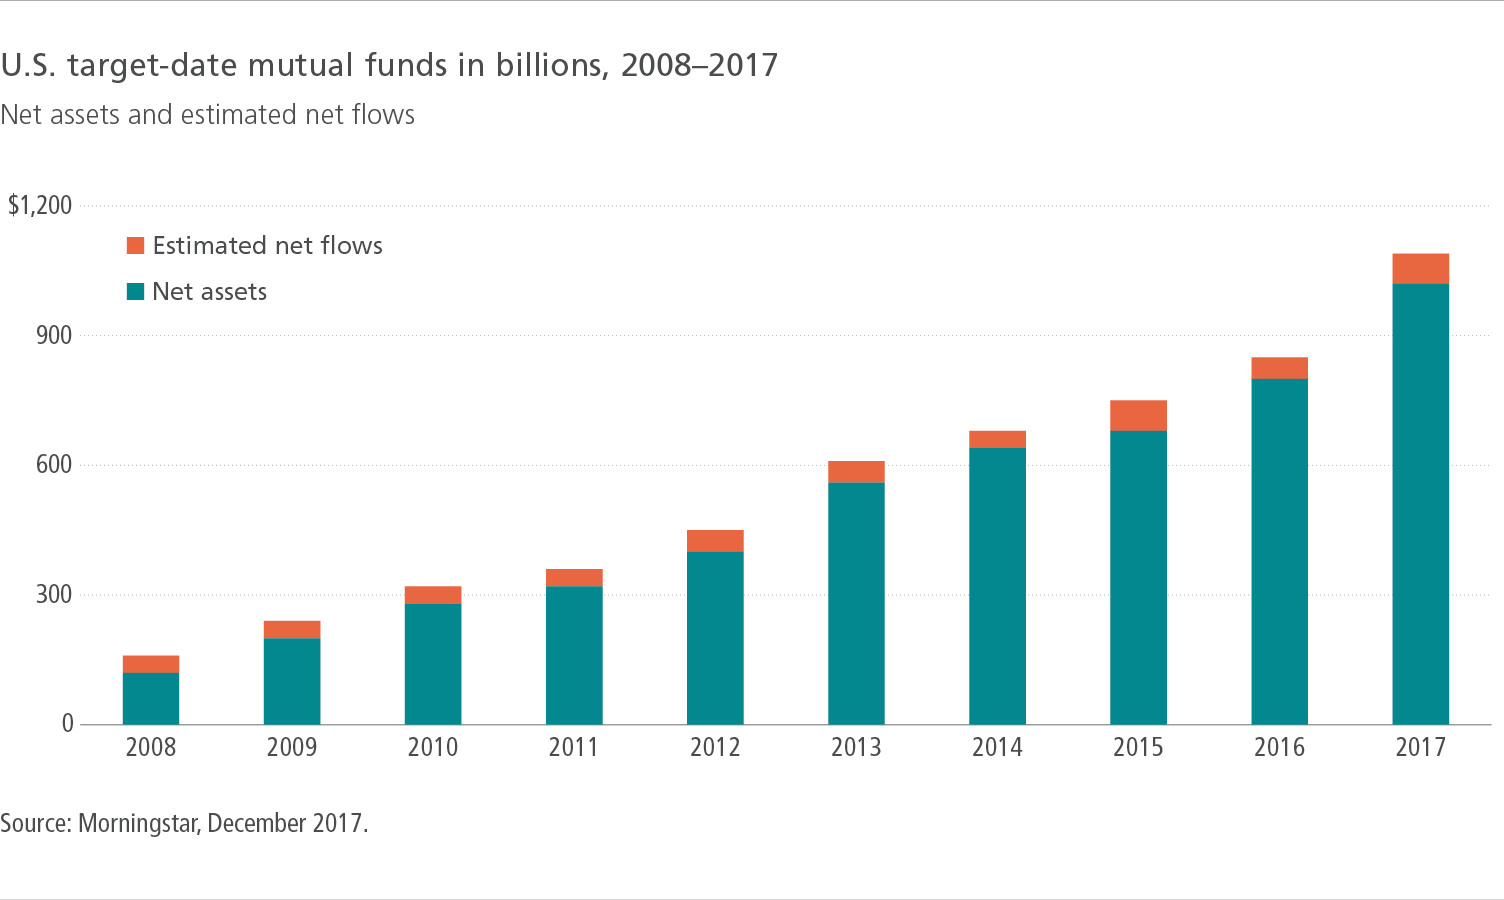 U.S. target-date mutual funds in billions, 2008-2017